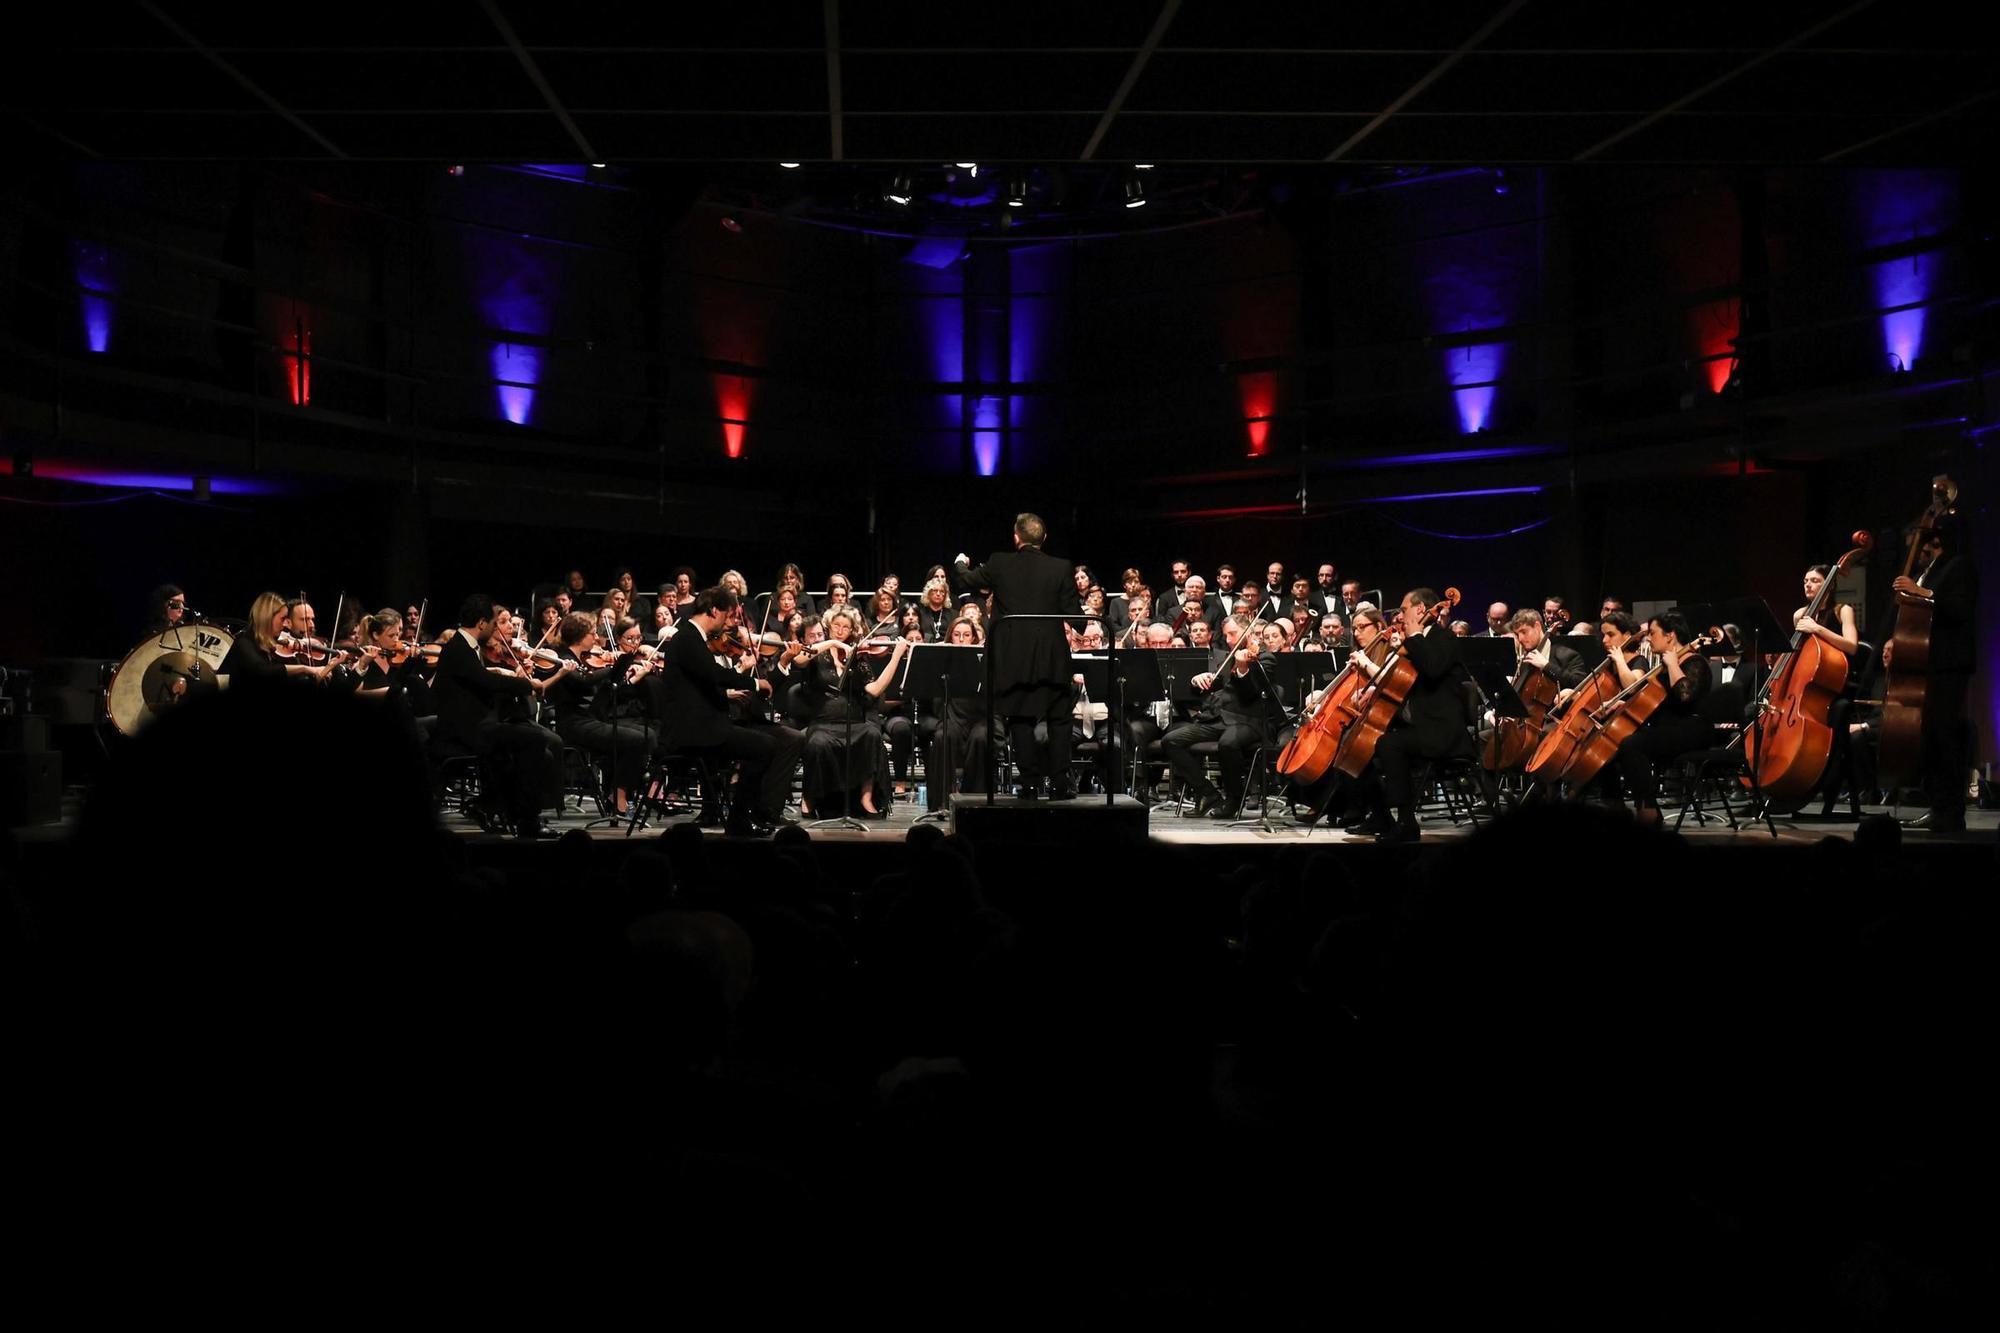 Concierto de la Banda Sinfónica Ciutat d'Eivissa dedicado a Beethoven